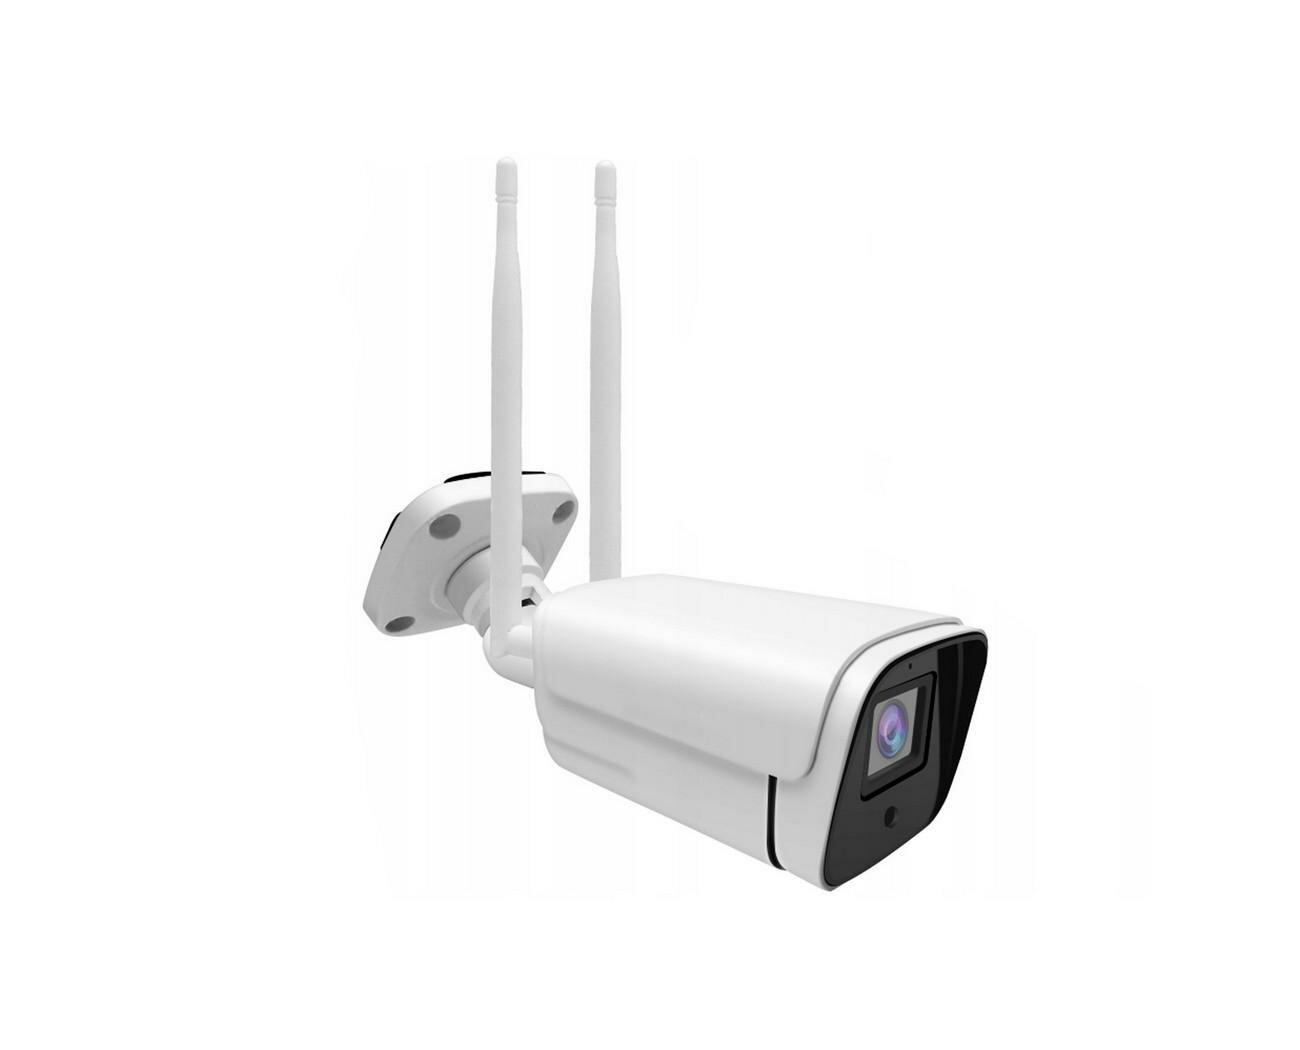 Уличная Wi-Fi IP-камера 3Mp HDcom SE-247-3MP (EU) (Q39959UL) с приложением SUNISEE. Поддержка аудио, датчик движения. С записью на SD карту